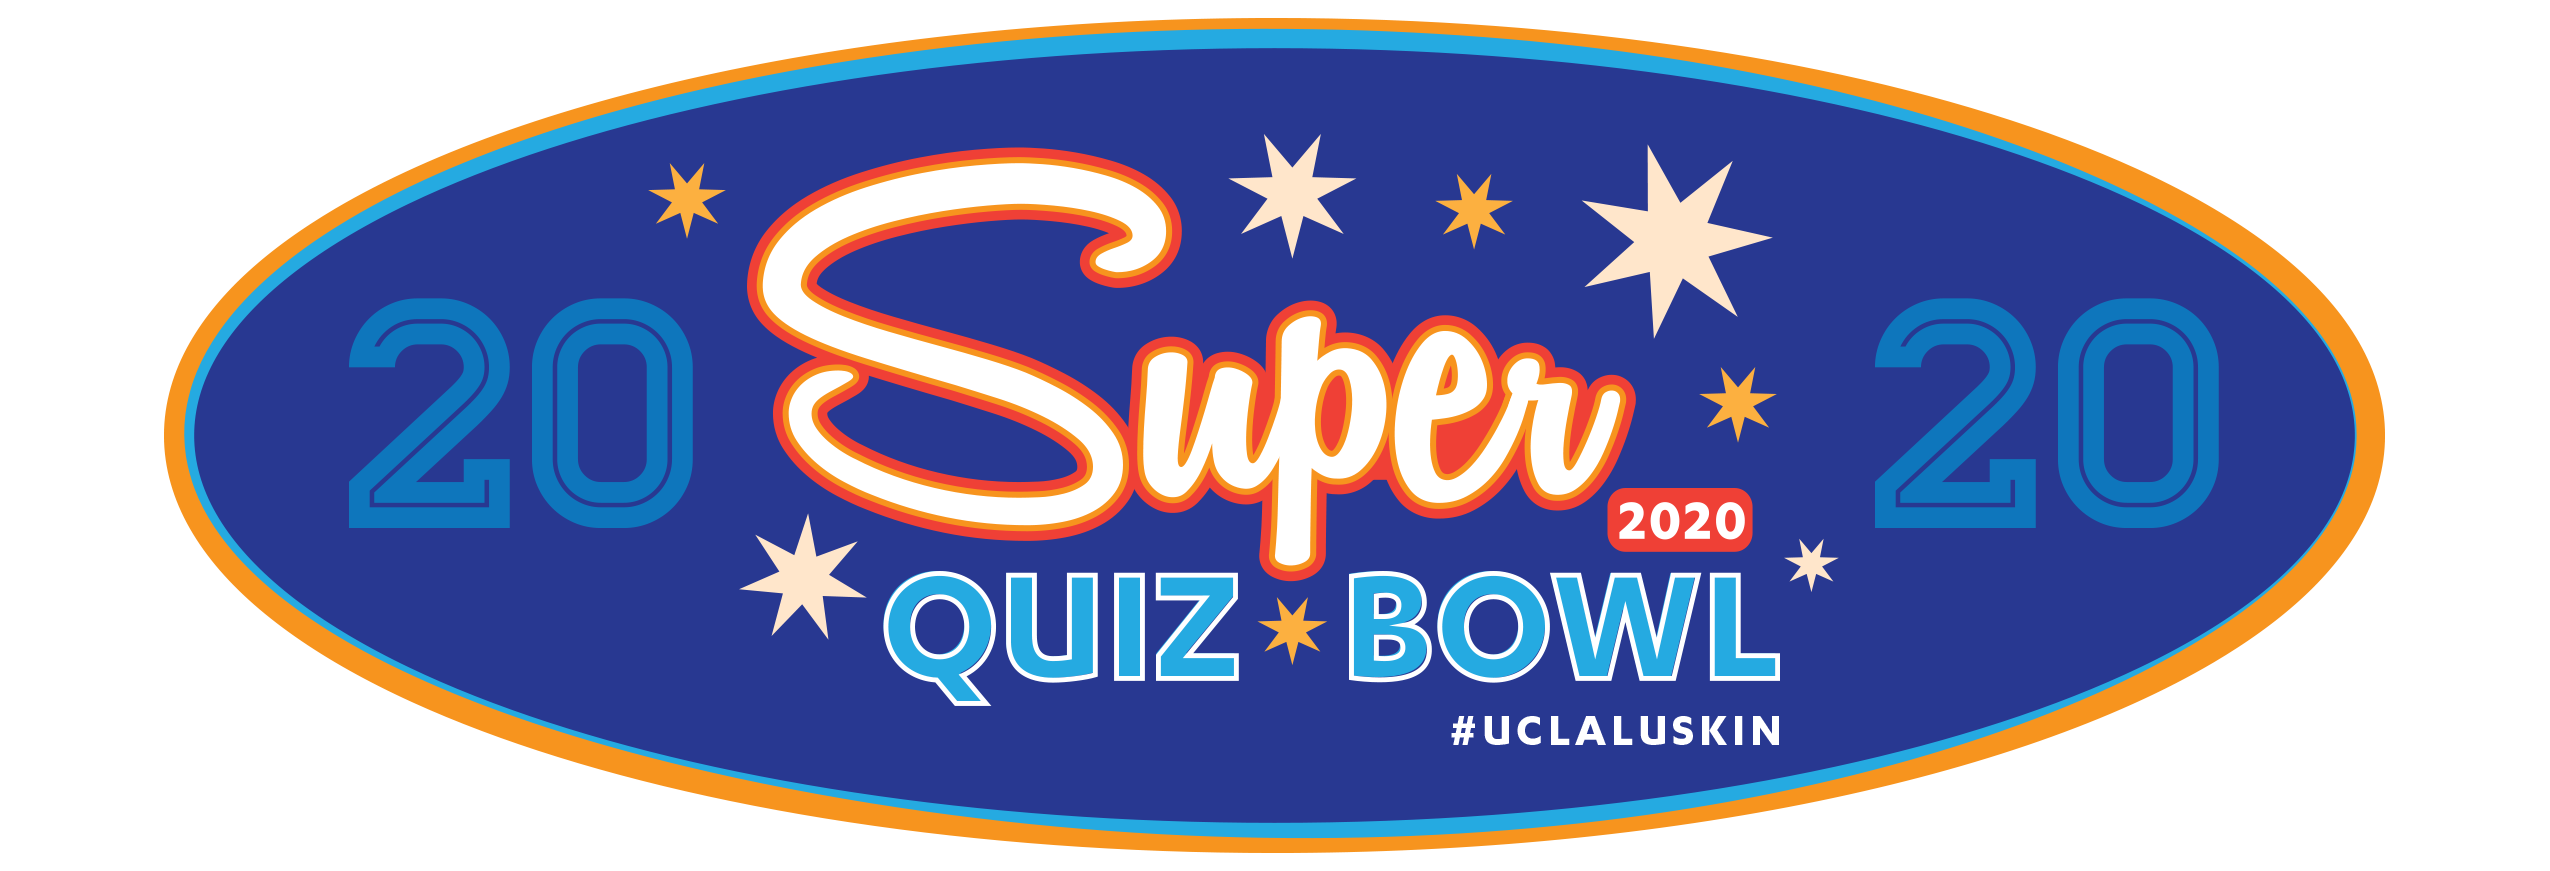 Super Quiz Bowl 2020